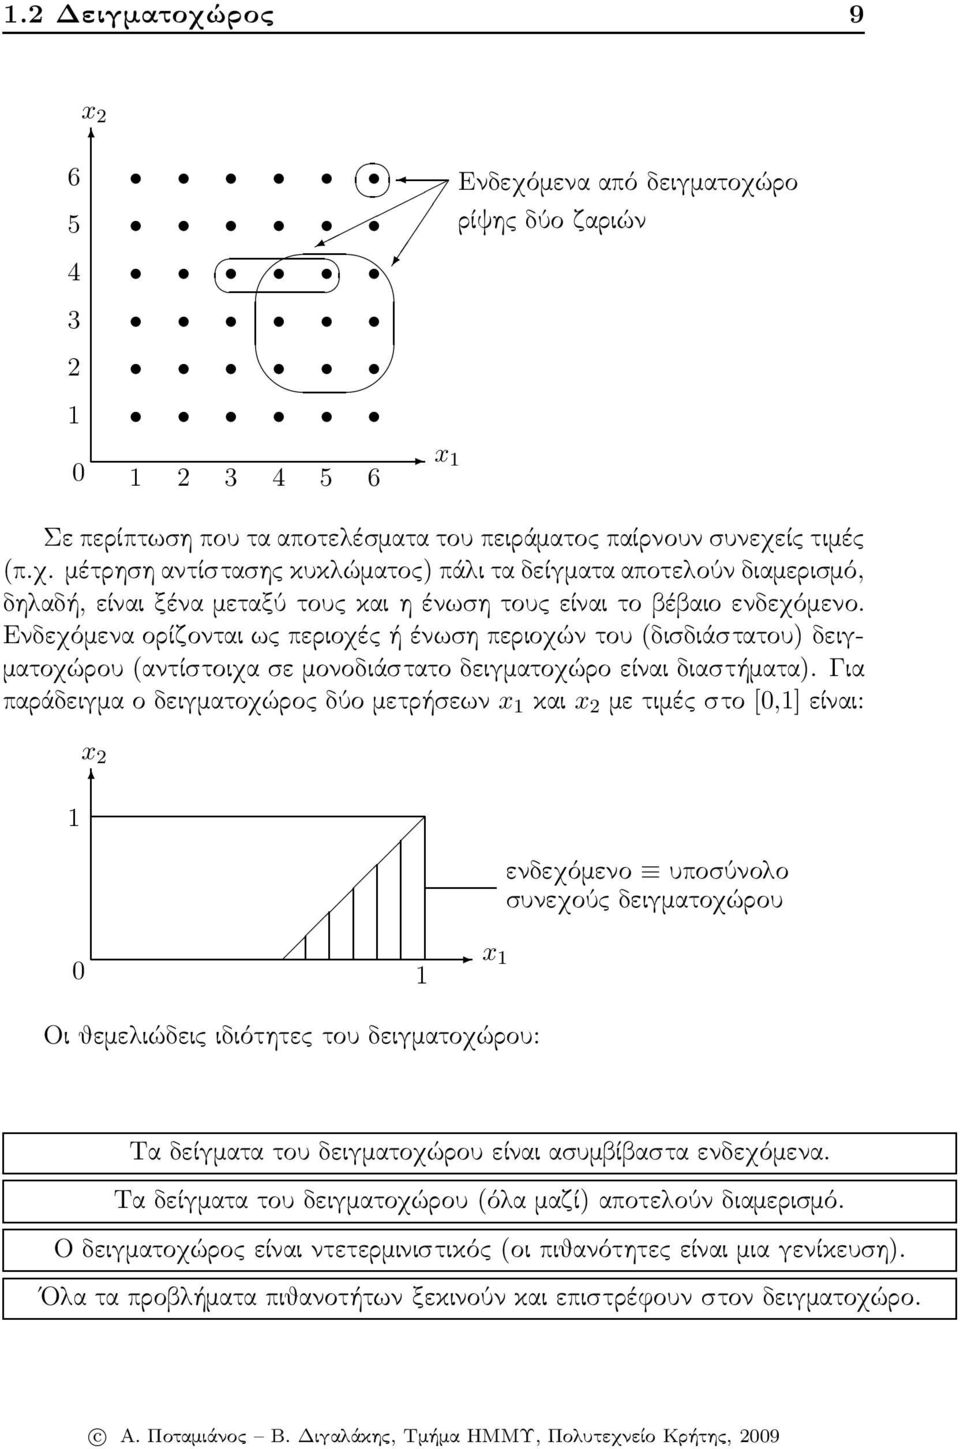 Για παράδειγμαοδειγματοχώροςδύομετρήσεων x 1 και x 2 μετιμέςστο[0,1]είναι: x 2 1 0 1 x 1 ενδεχόμενο υποσύνολο συνεχούς δειγματοχώρου Οι θεμελιώδεις ιδιότητες του δειγματοχώρου: Τα δείγματα του